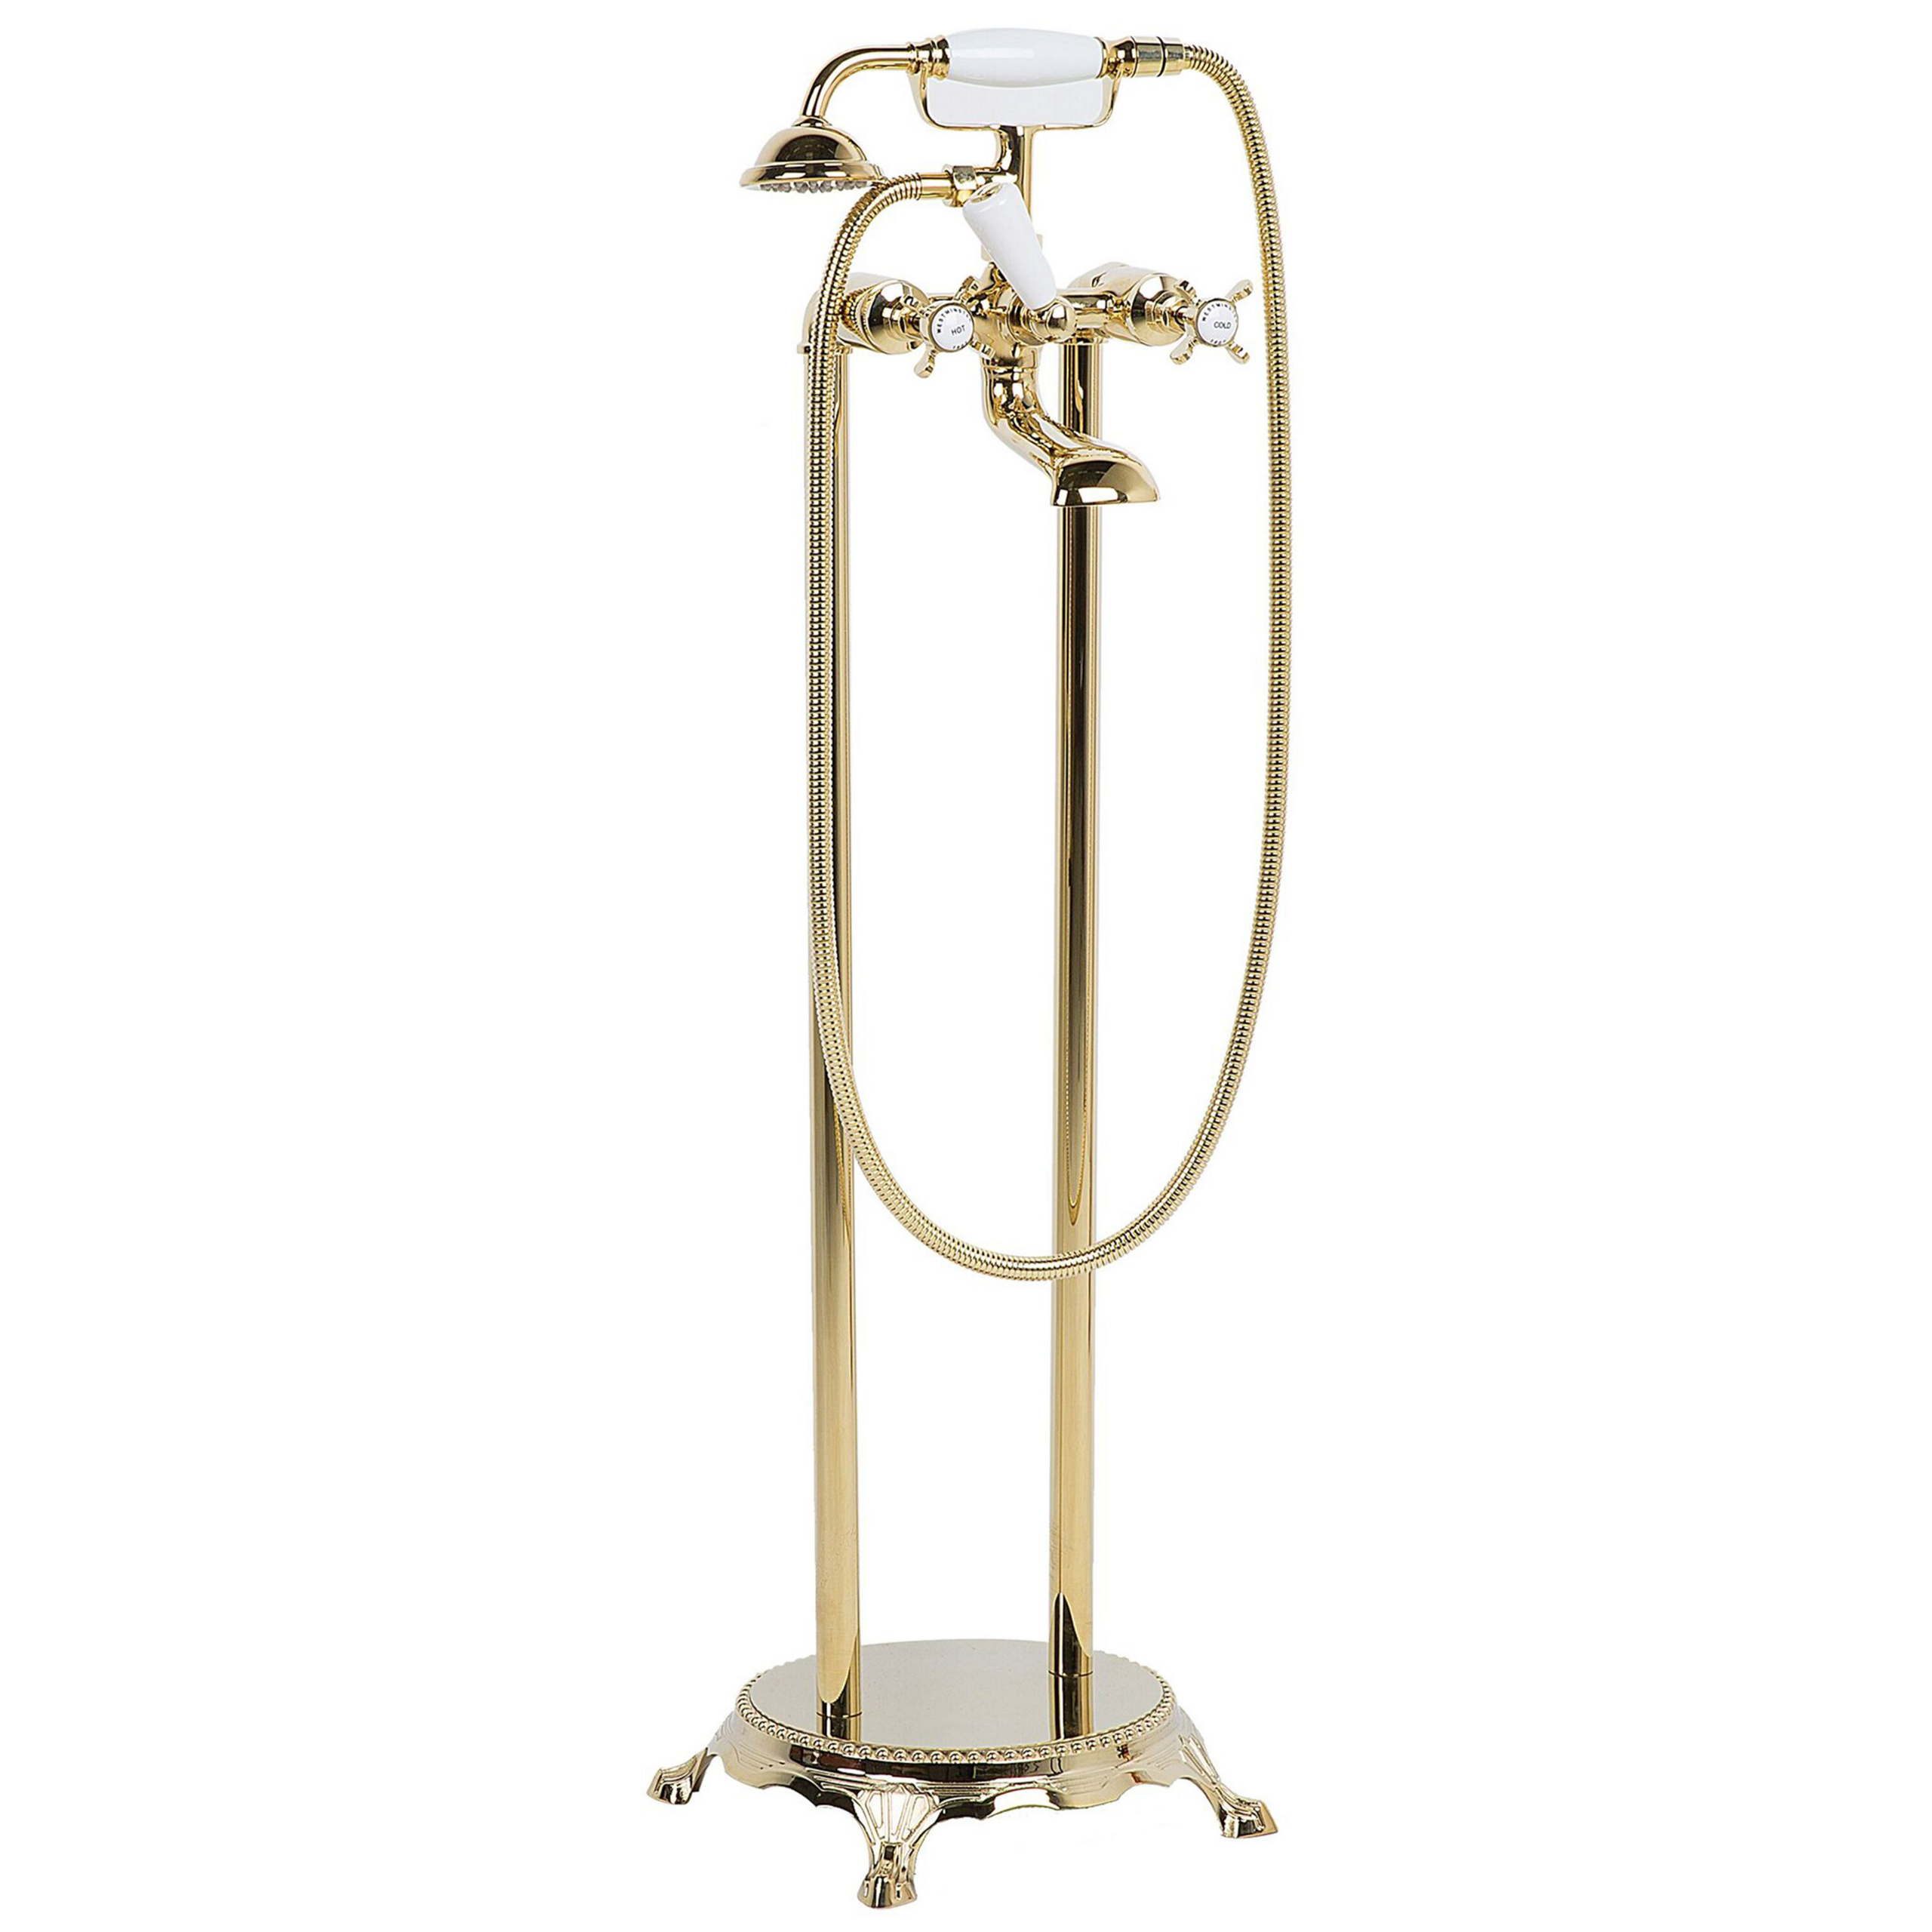 Beliani Torneira autónoma dourada para banheira autónoma em aço inoxidável e latão 98 cm de altura no estilo retro vintage